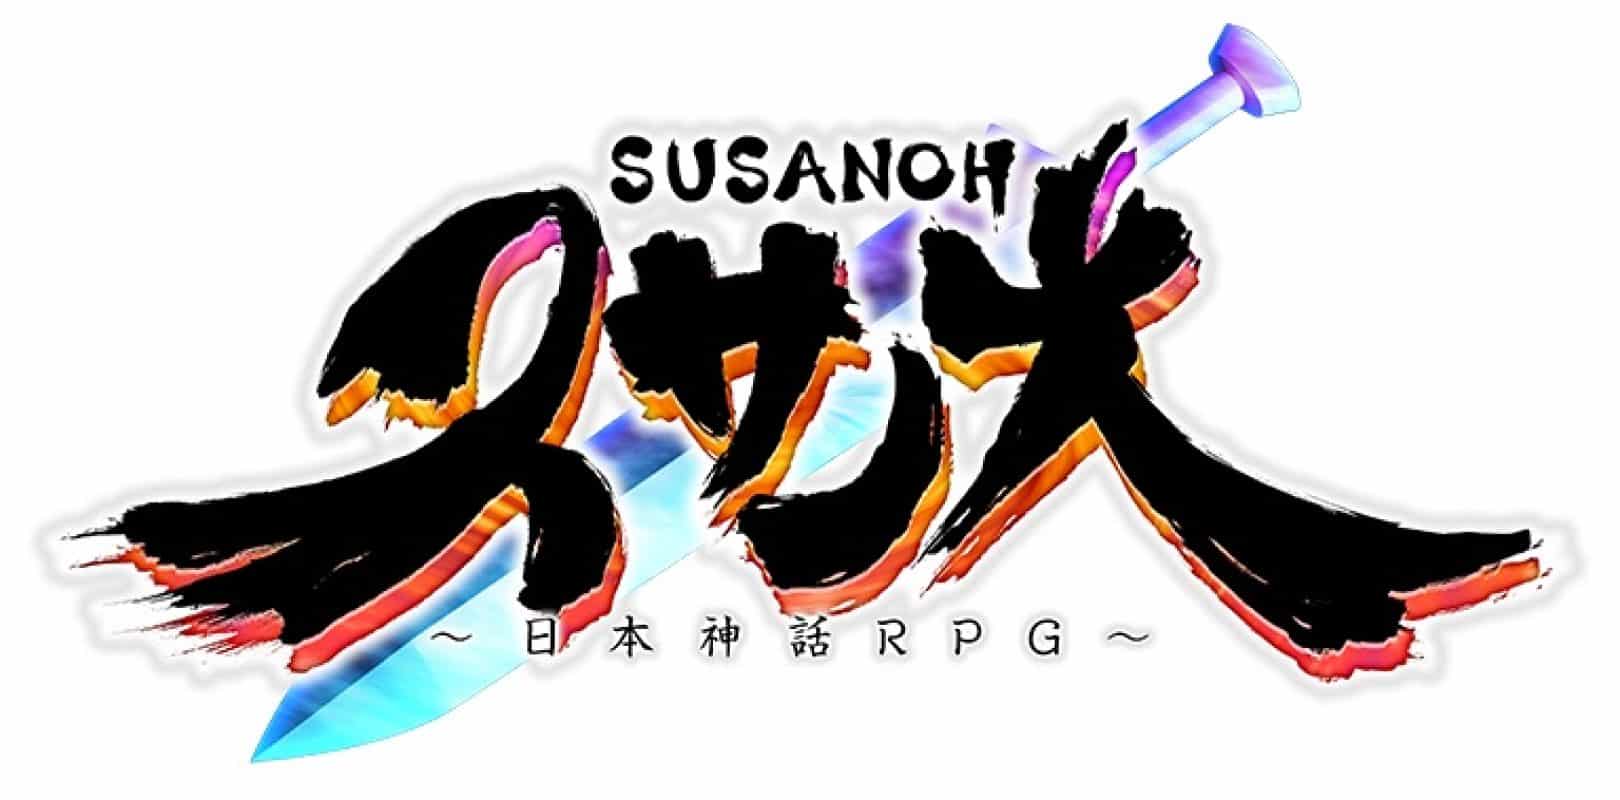 Susanoh Japanese Mythology RPG